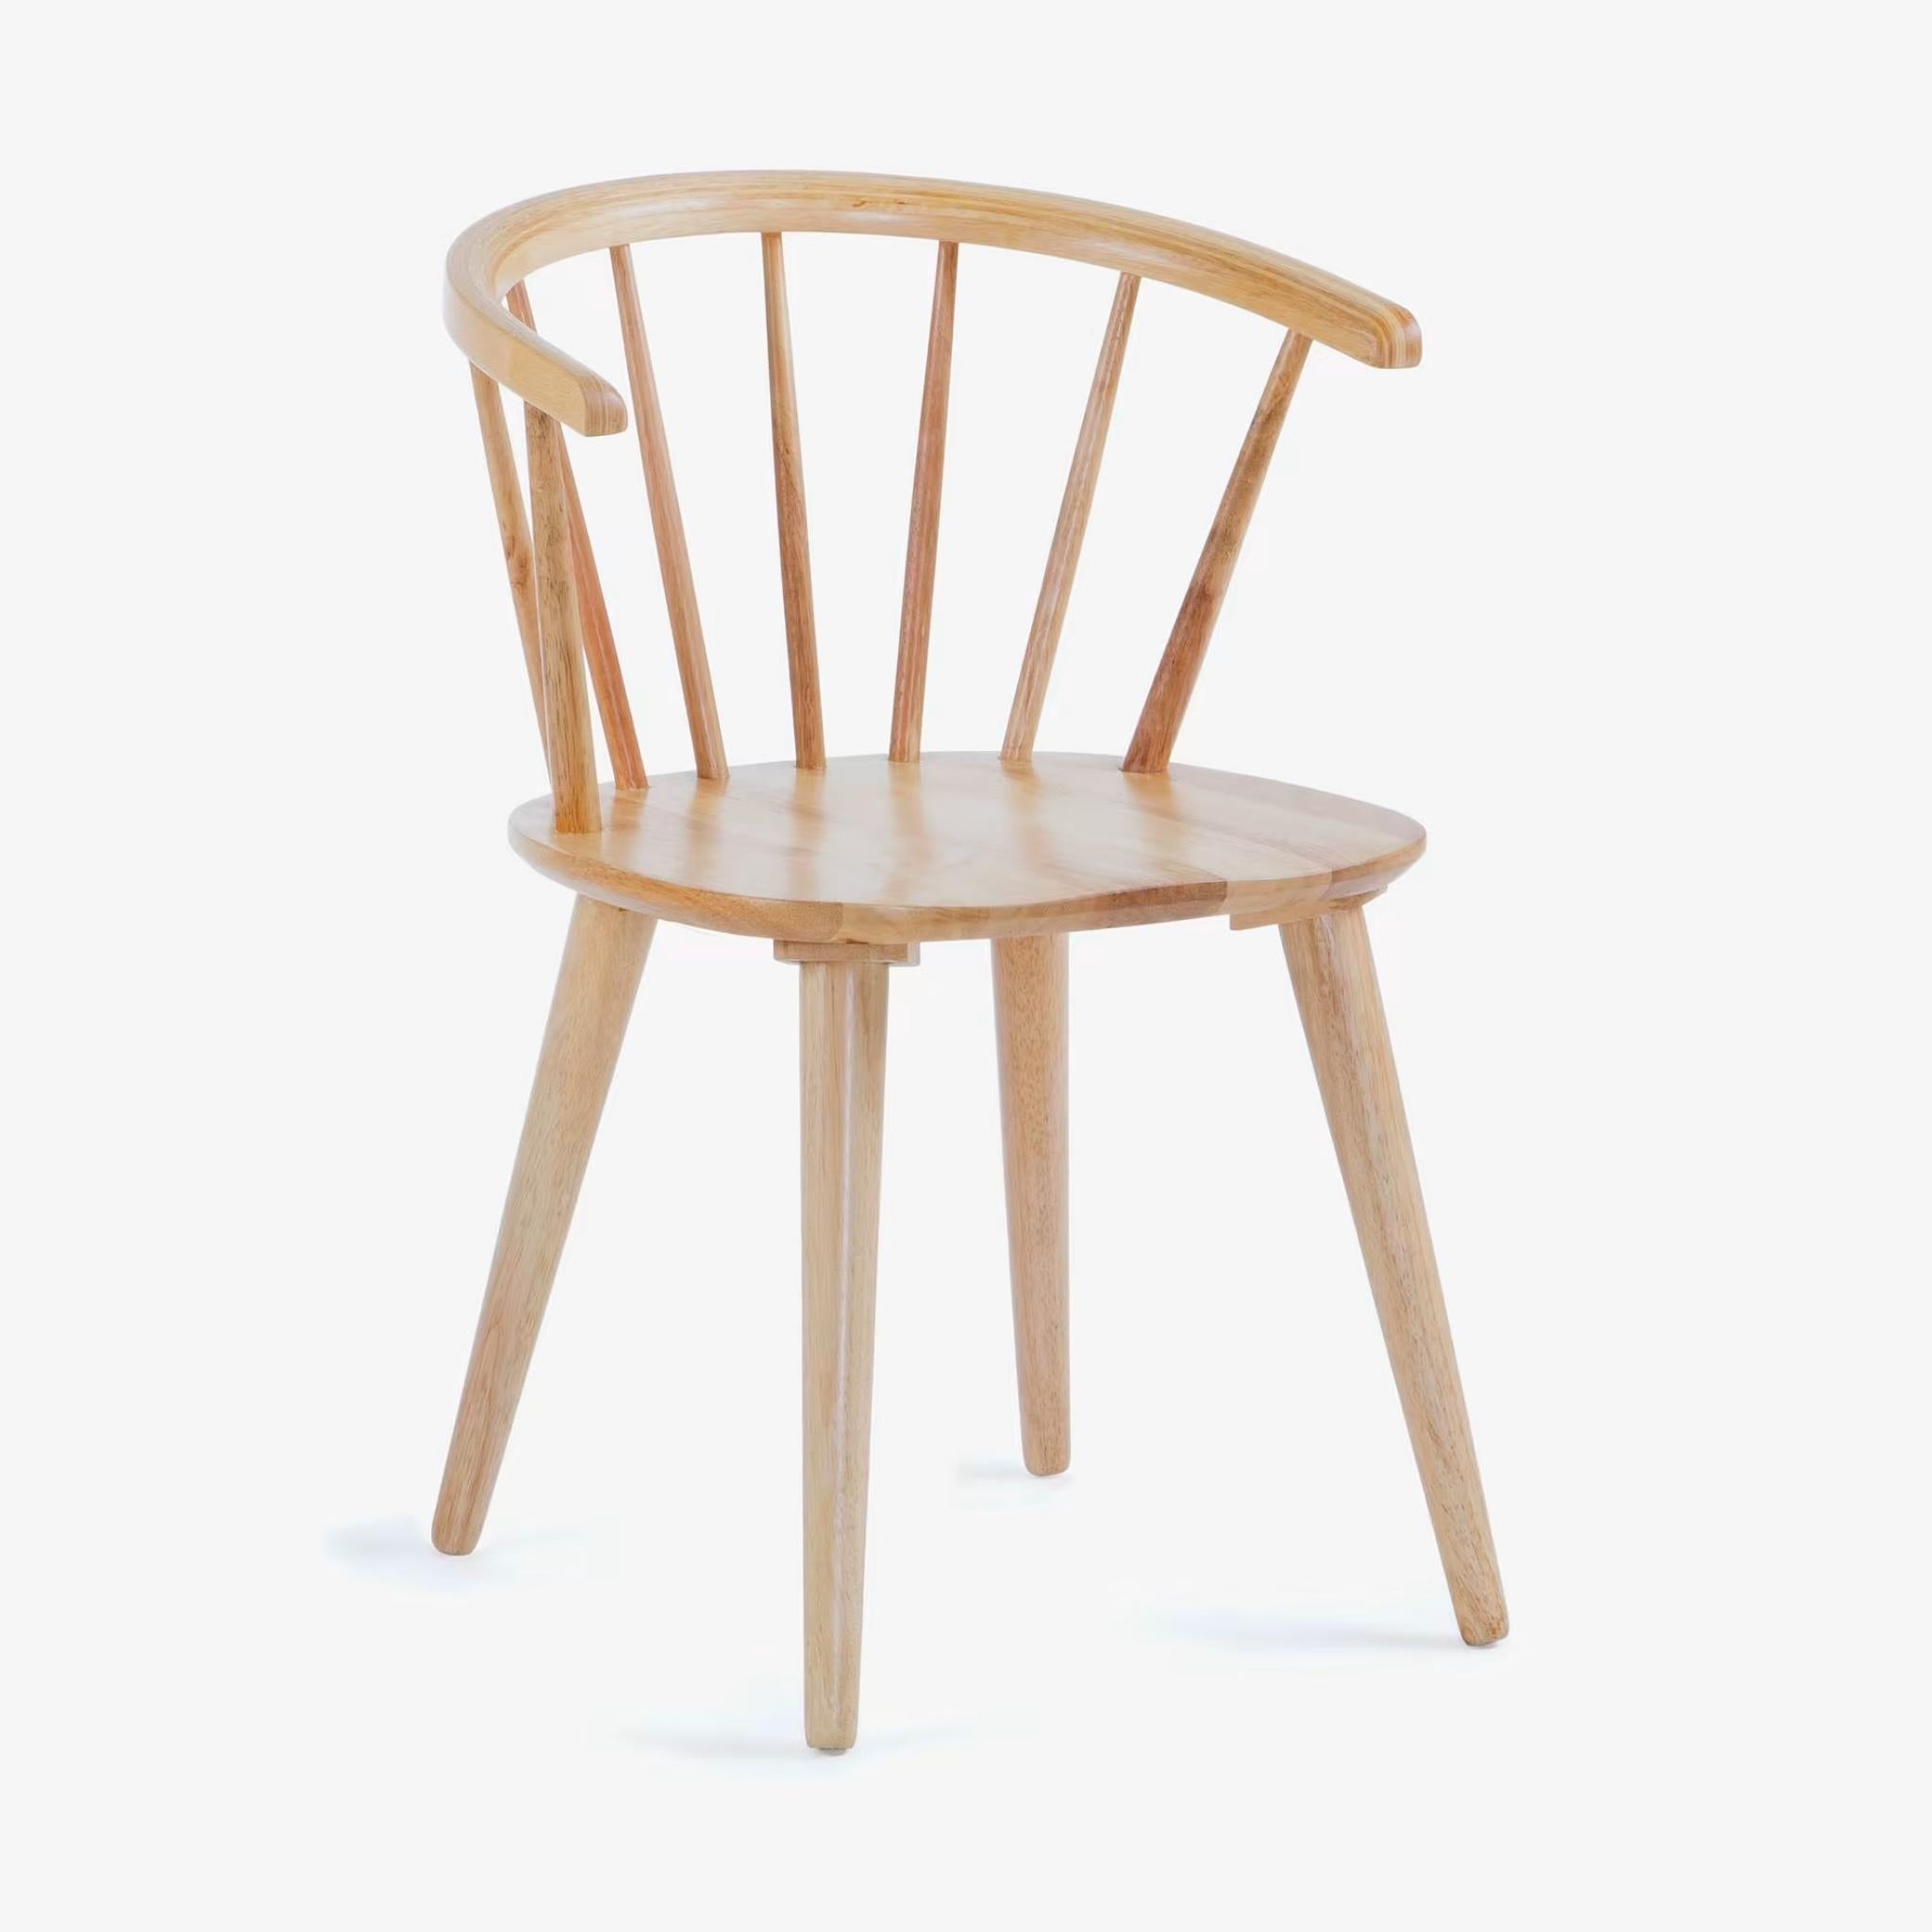 Kave Home Trise Stuhl - Farbe Natur - SKU #CC0219M46 - weißer Hintergrund front